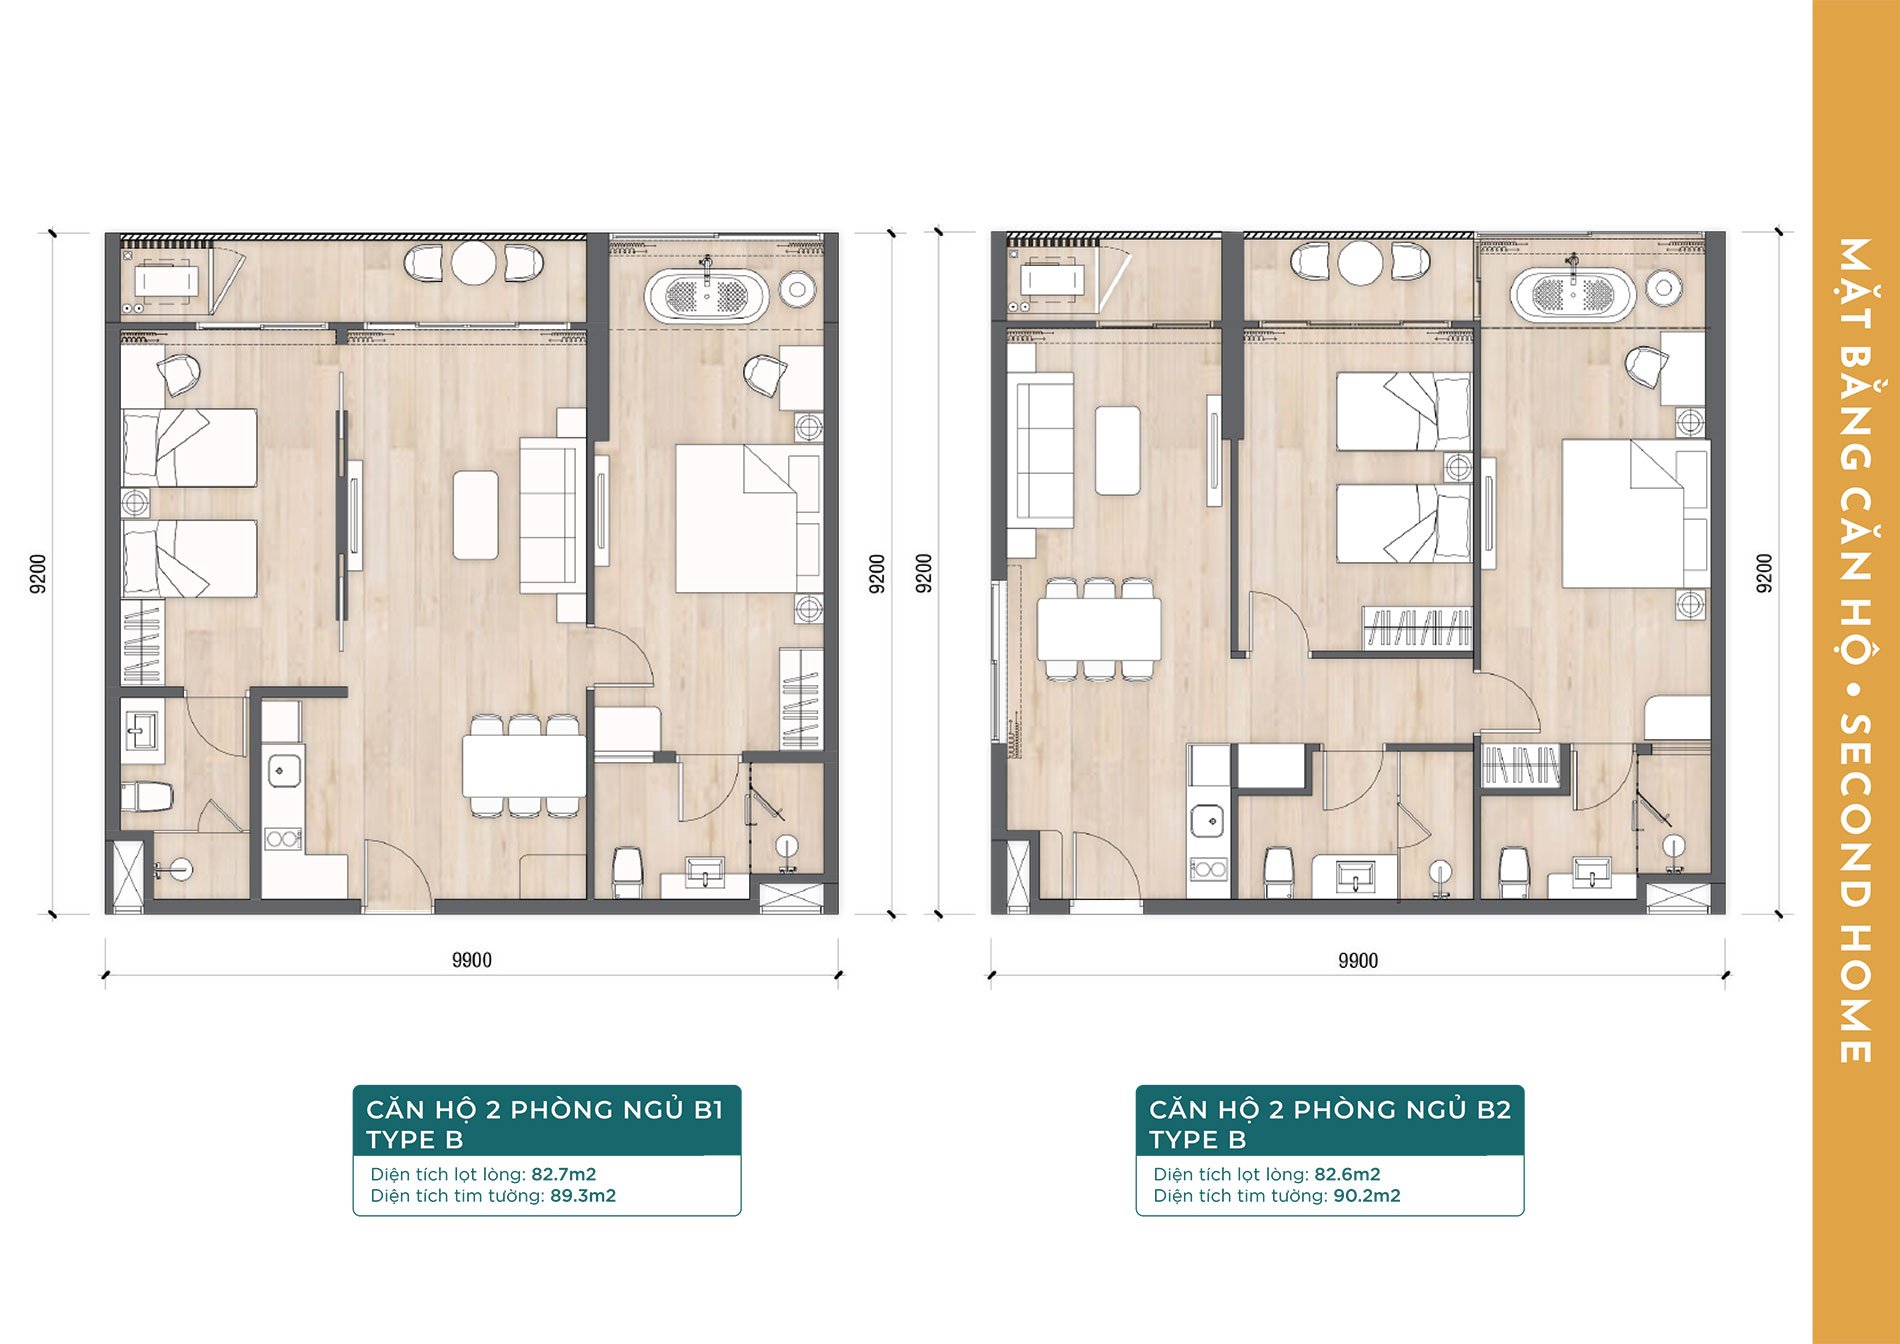 Layout thiết kế căn hộ 2 phòng ngủ B1 Type B và căn hộ 2 phòng ngủ B2 Type B.